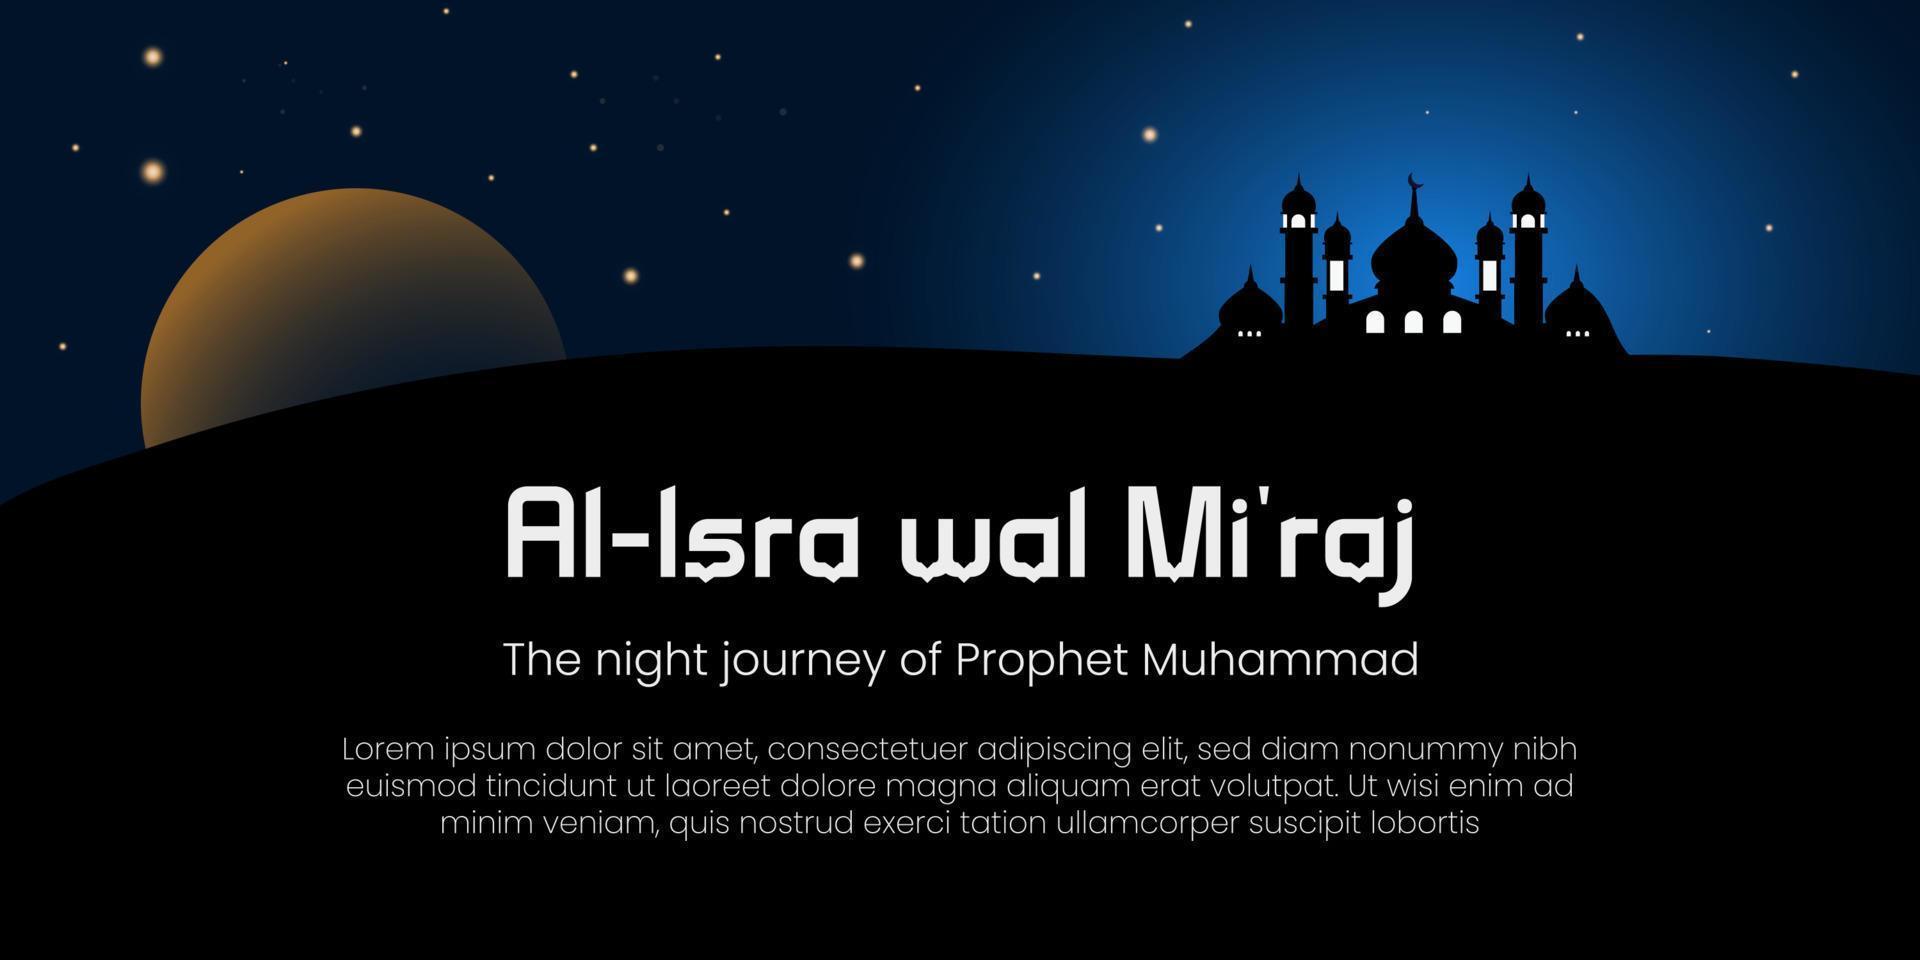 al-isra wal mi'raj significa el viaje nocturno del profeta muhammad. pancarta, póster, tarjeta de felicitación. ilustración vectorial vector